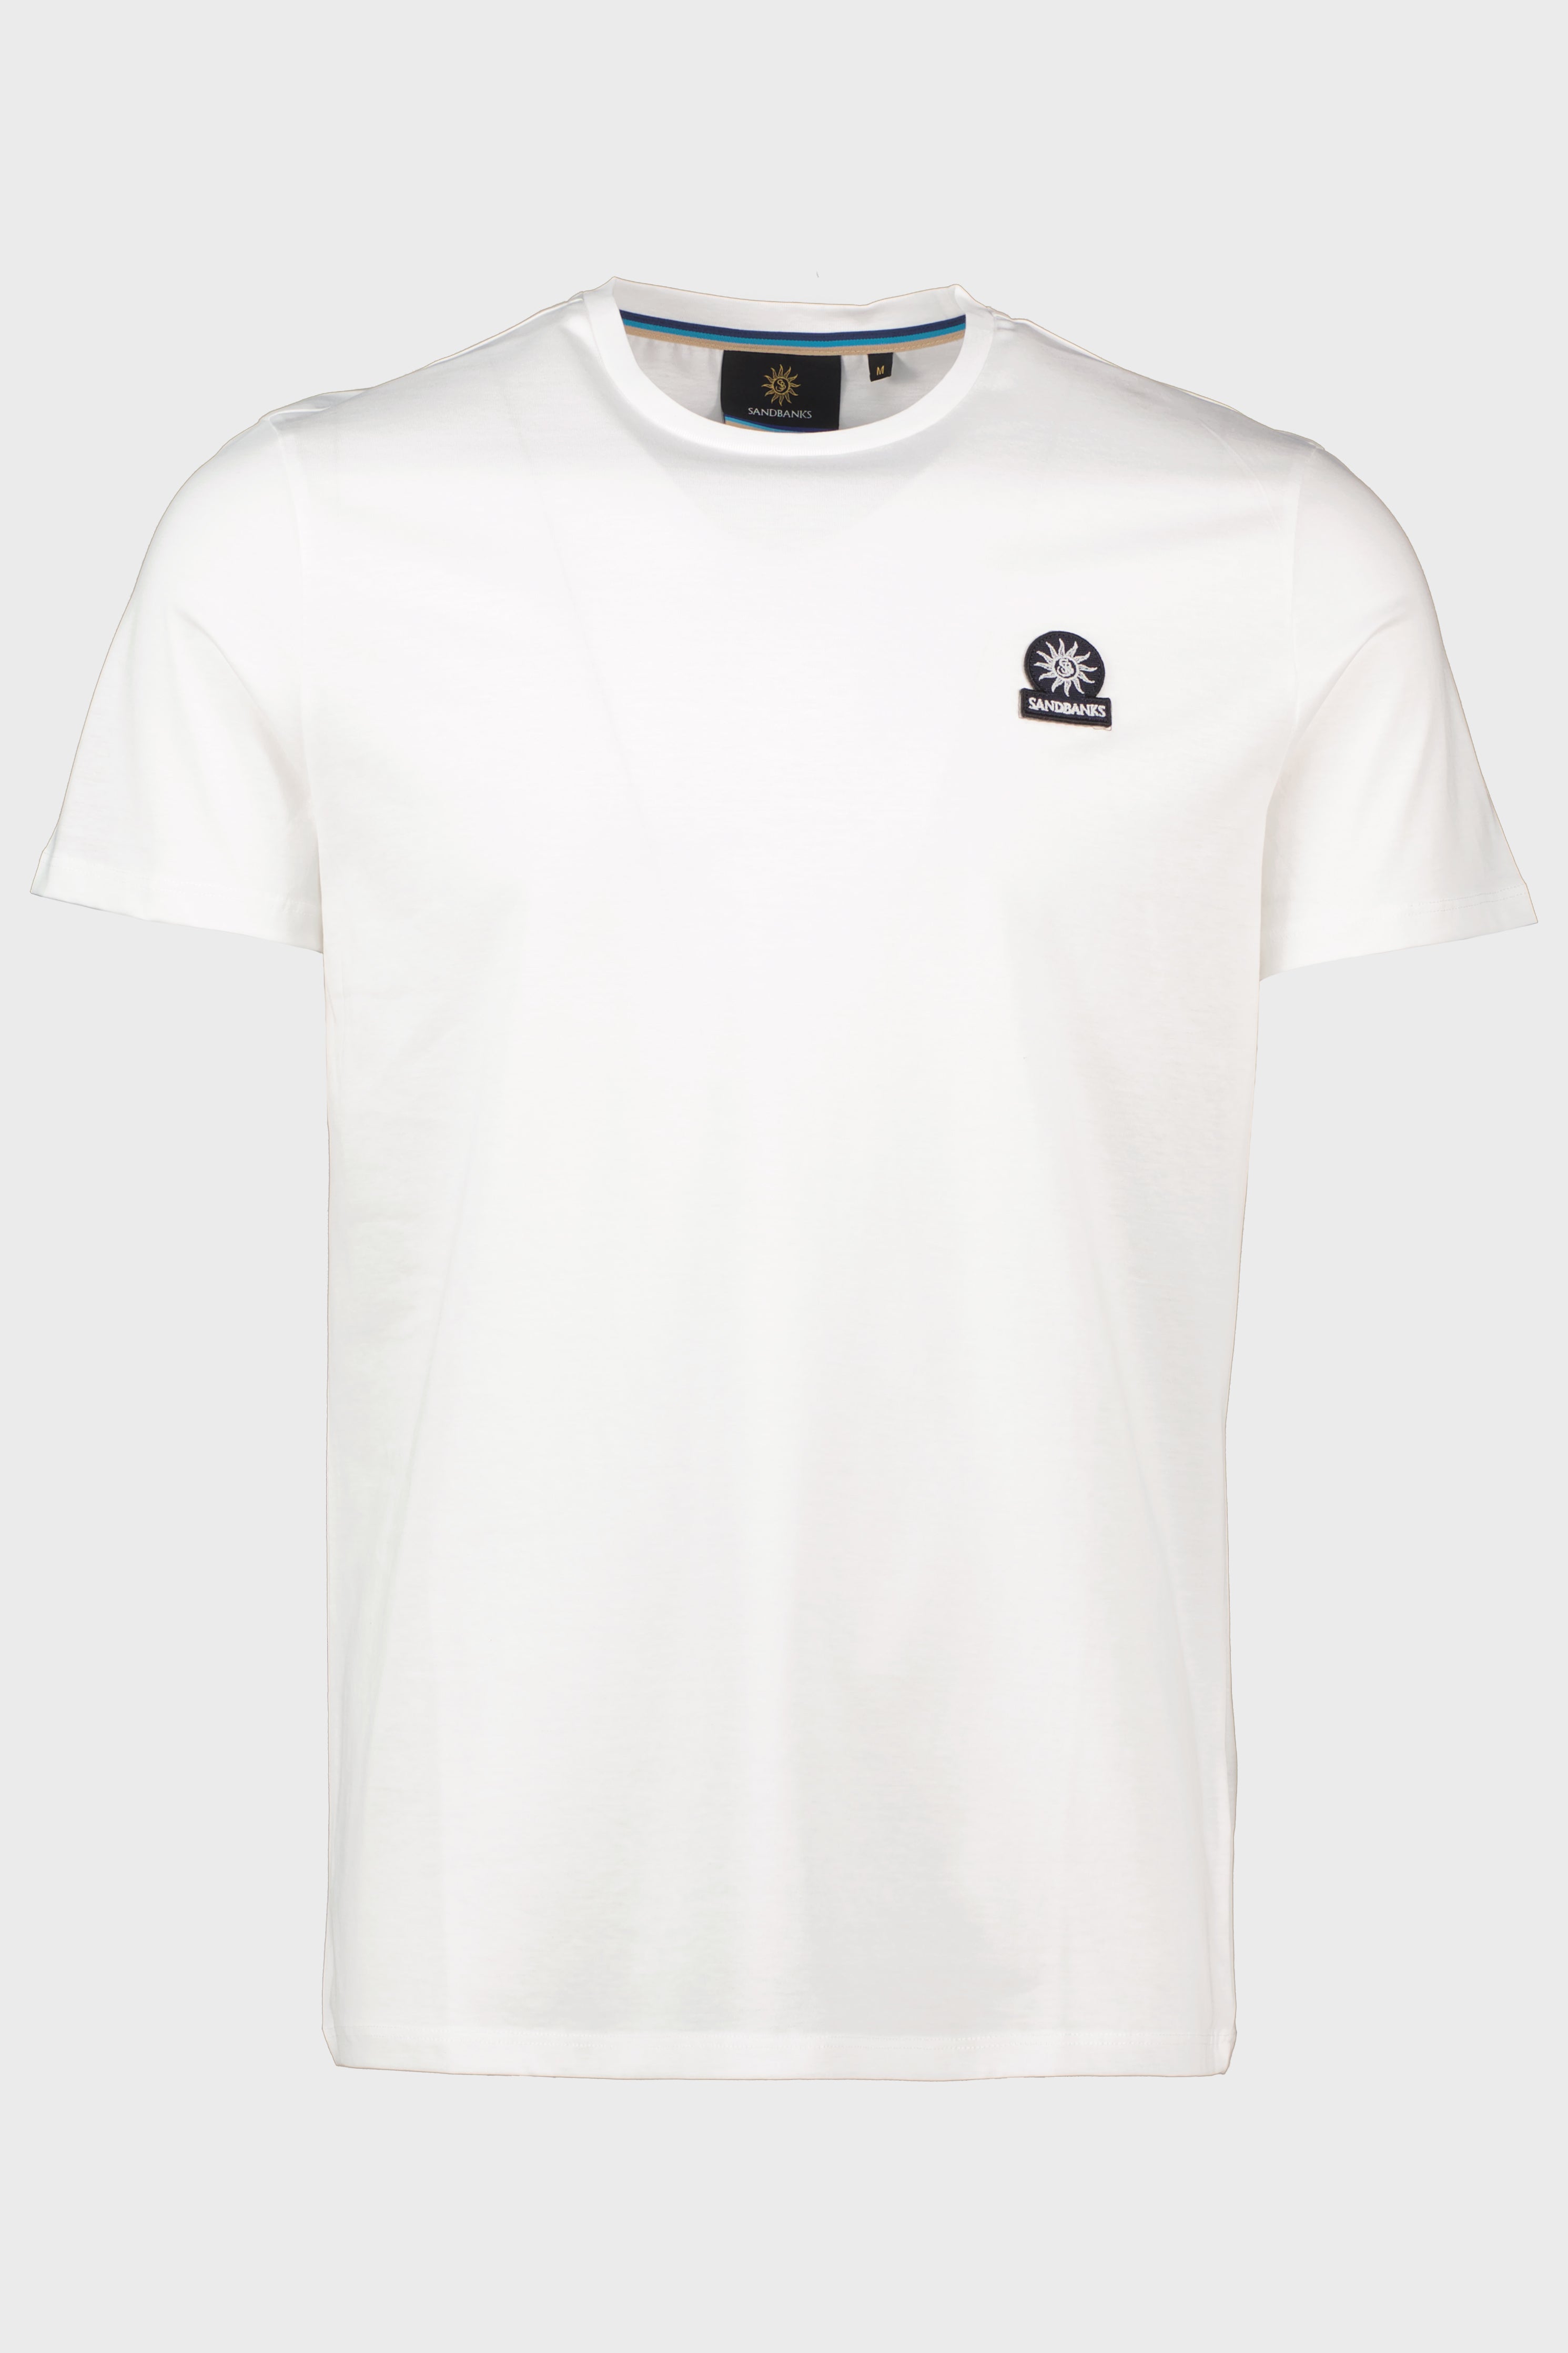 Men's Sandbanks Badge Logo White T Shirt